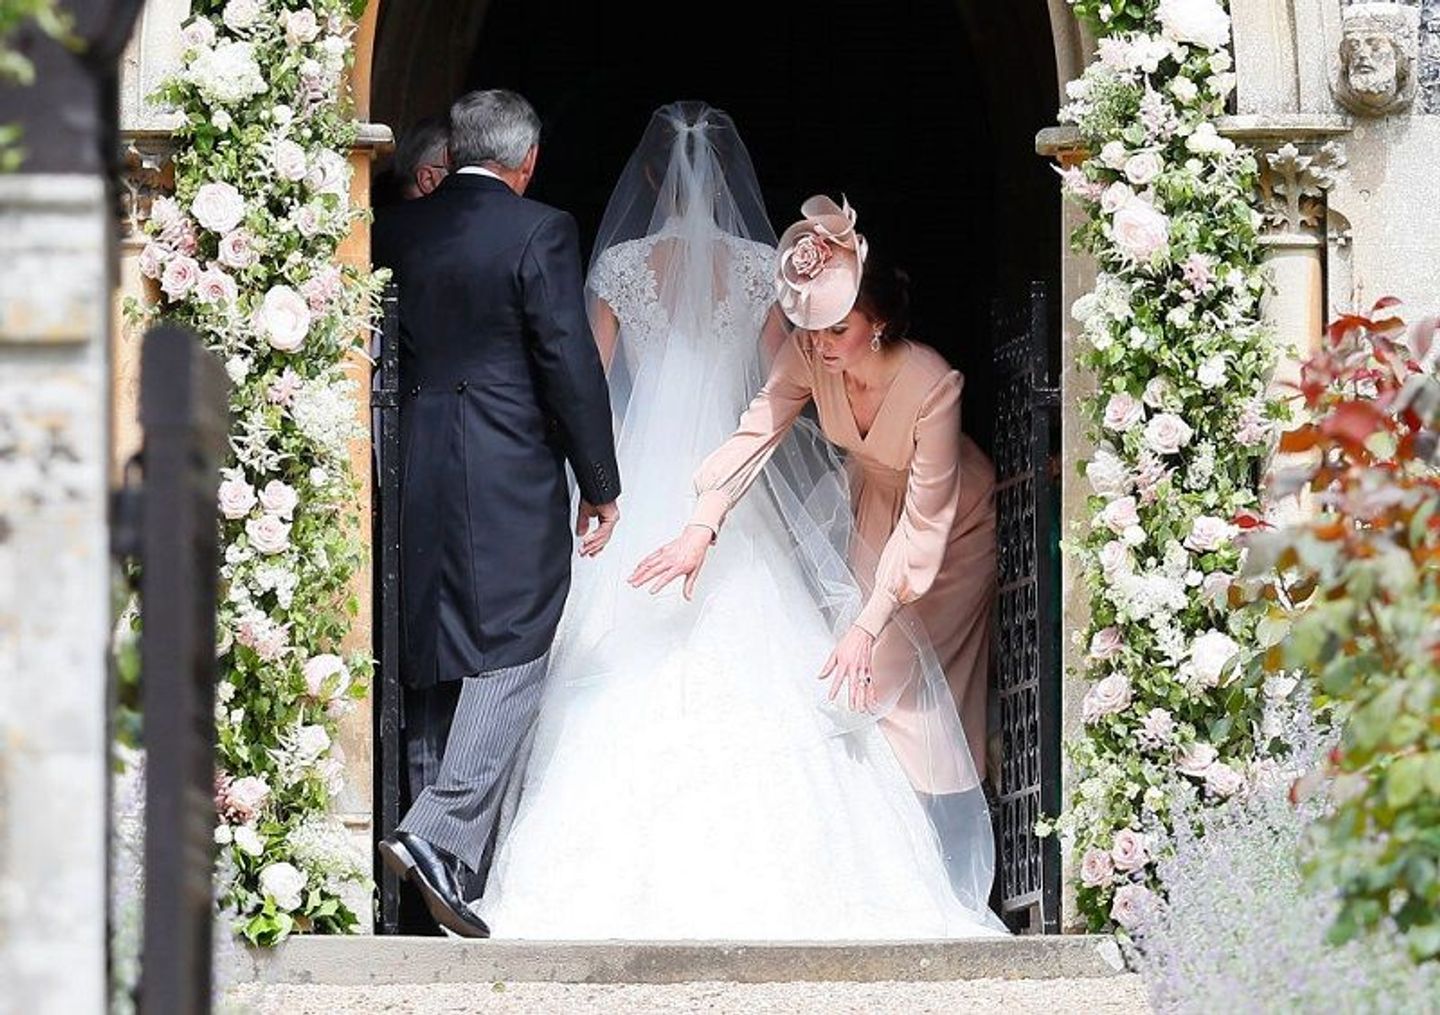 ชุดเจ้าสาว,งานแต่งงานดารา,จัดดอกไม้งานแต่ง งานแต่งงานหรูหราสุดคลาสสิกของ พิพพา มิดเดิลตัน น้องสาว ดัชเชสส์ เคท แห่งเคมบริดจ์